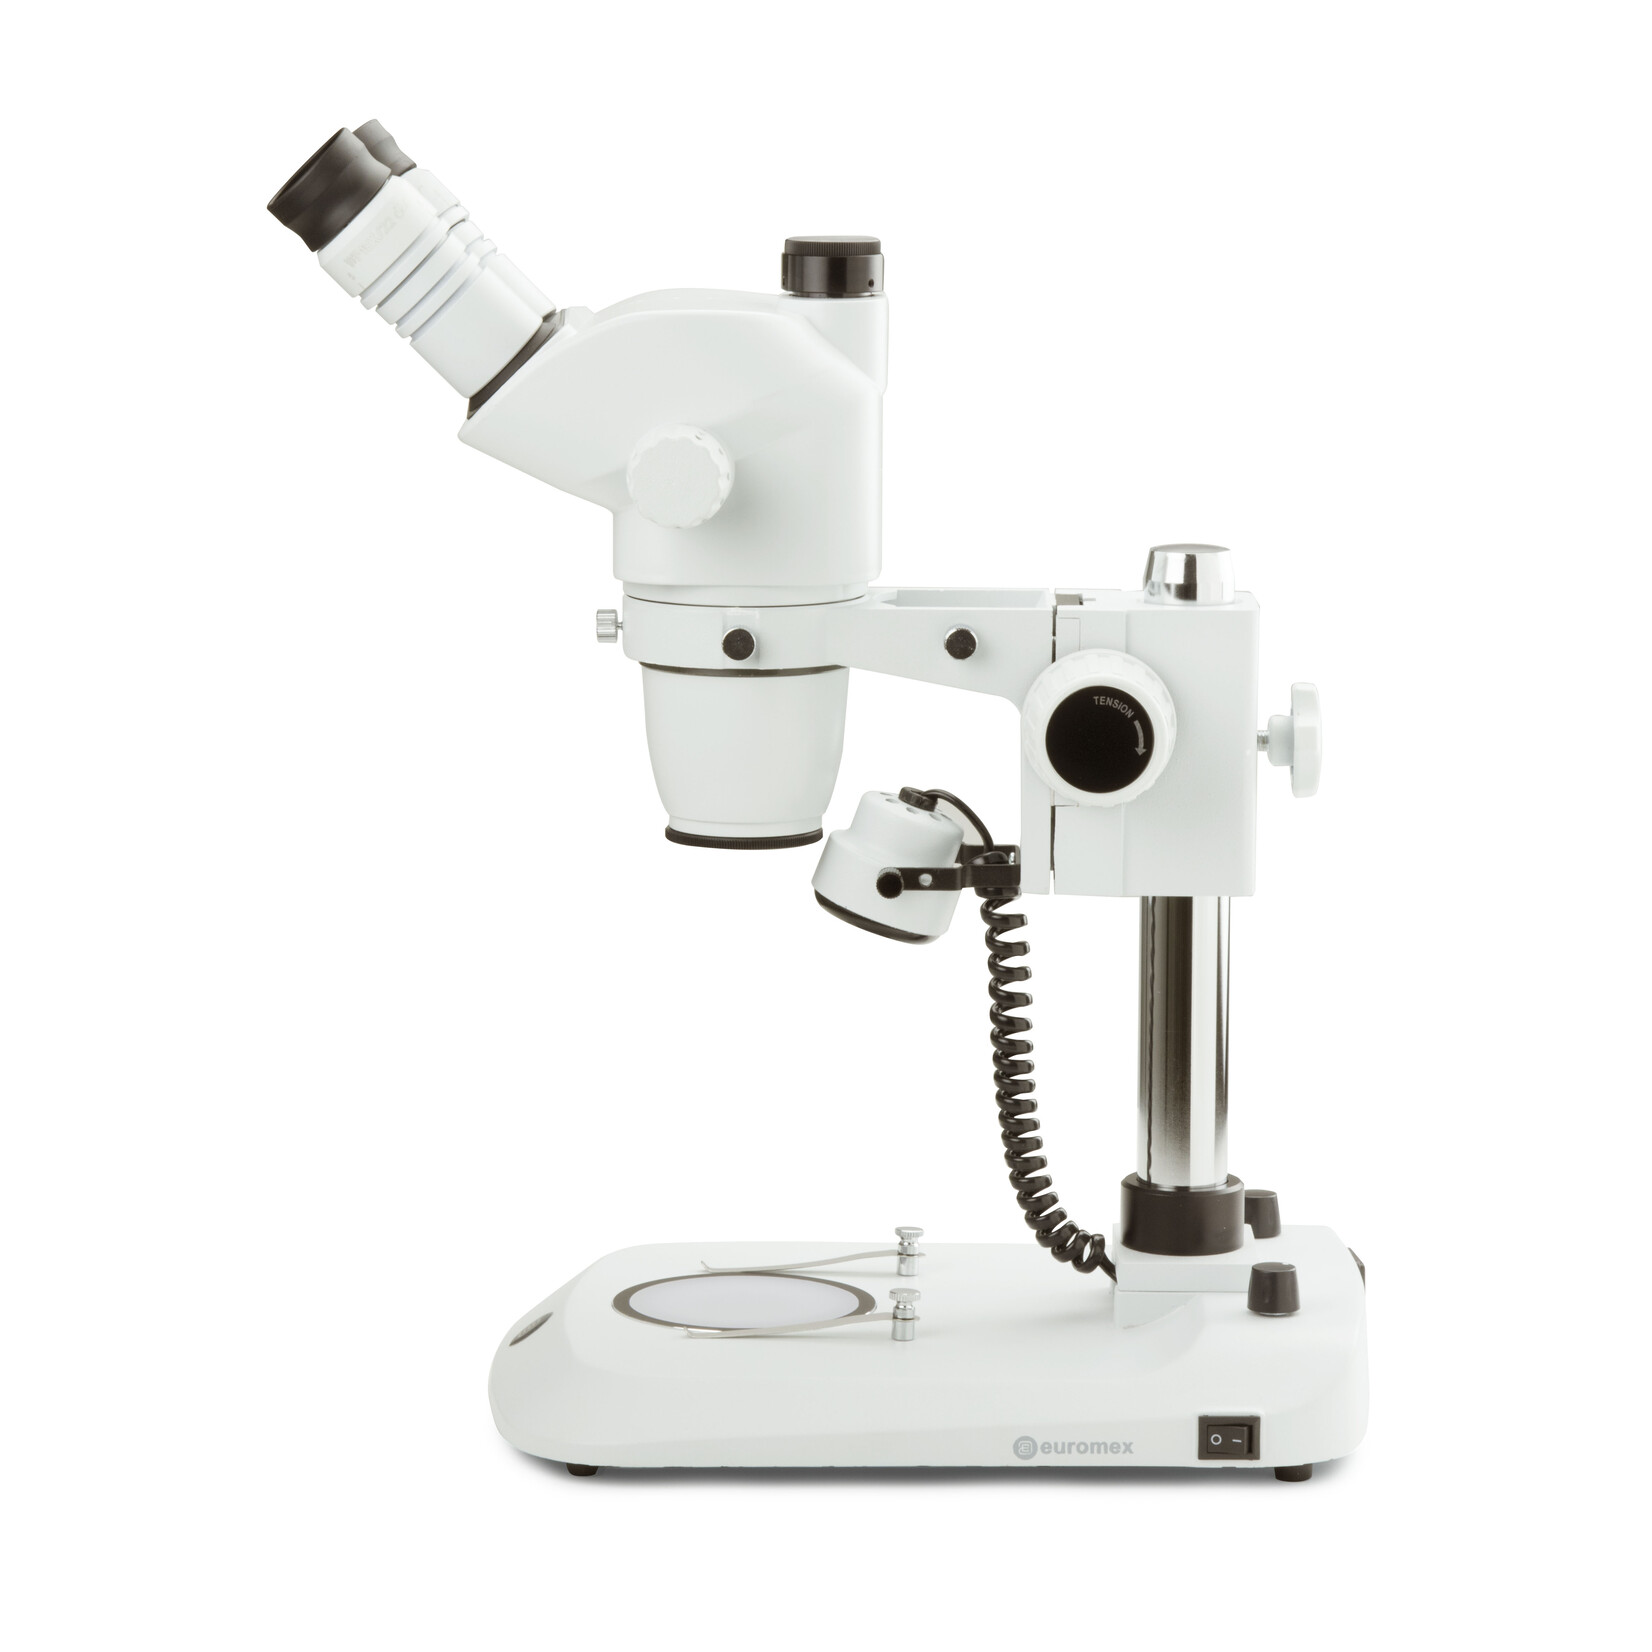 Microscopio stereo zoom trinoculare NexiusZoom EVO, obiettivo da 0,65x a 5,5x